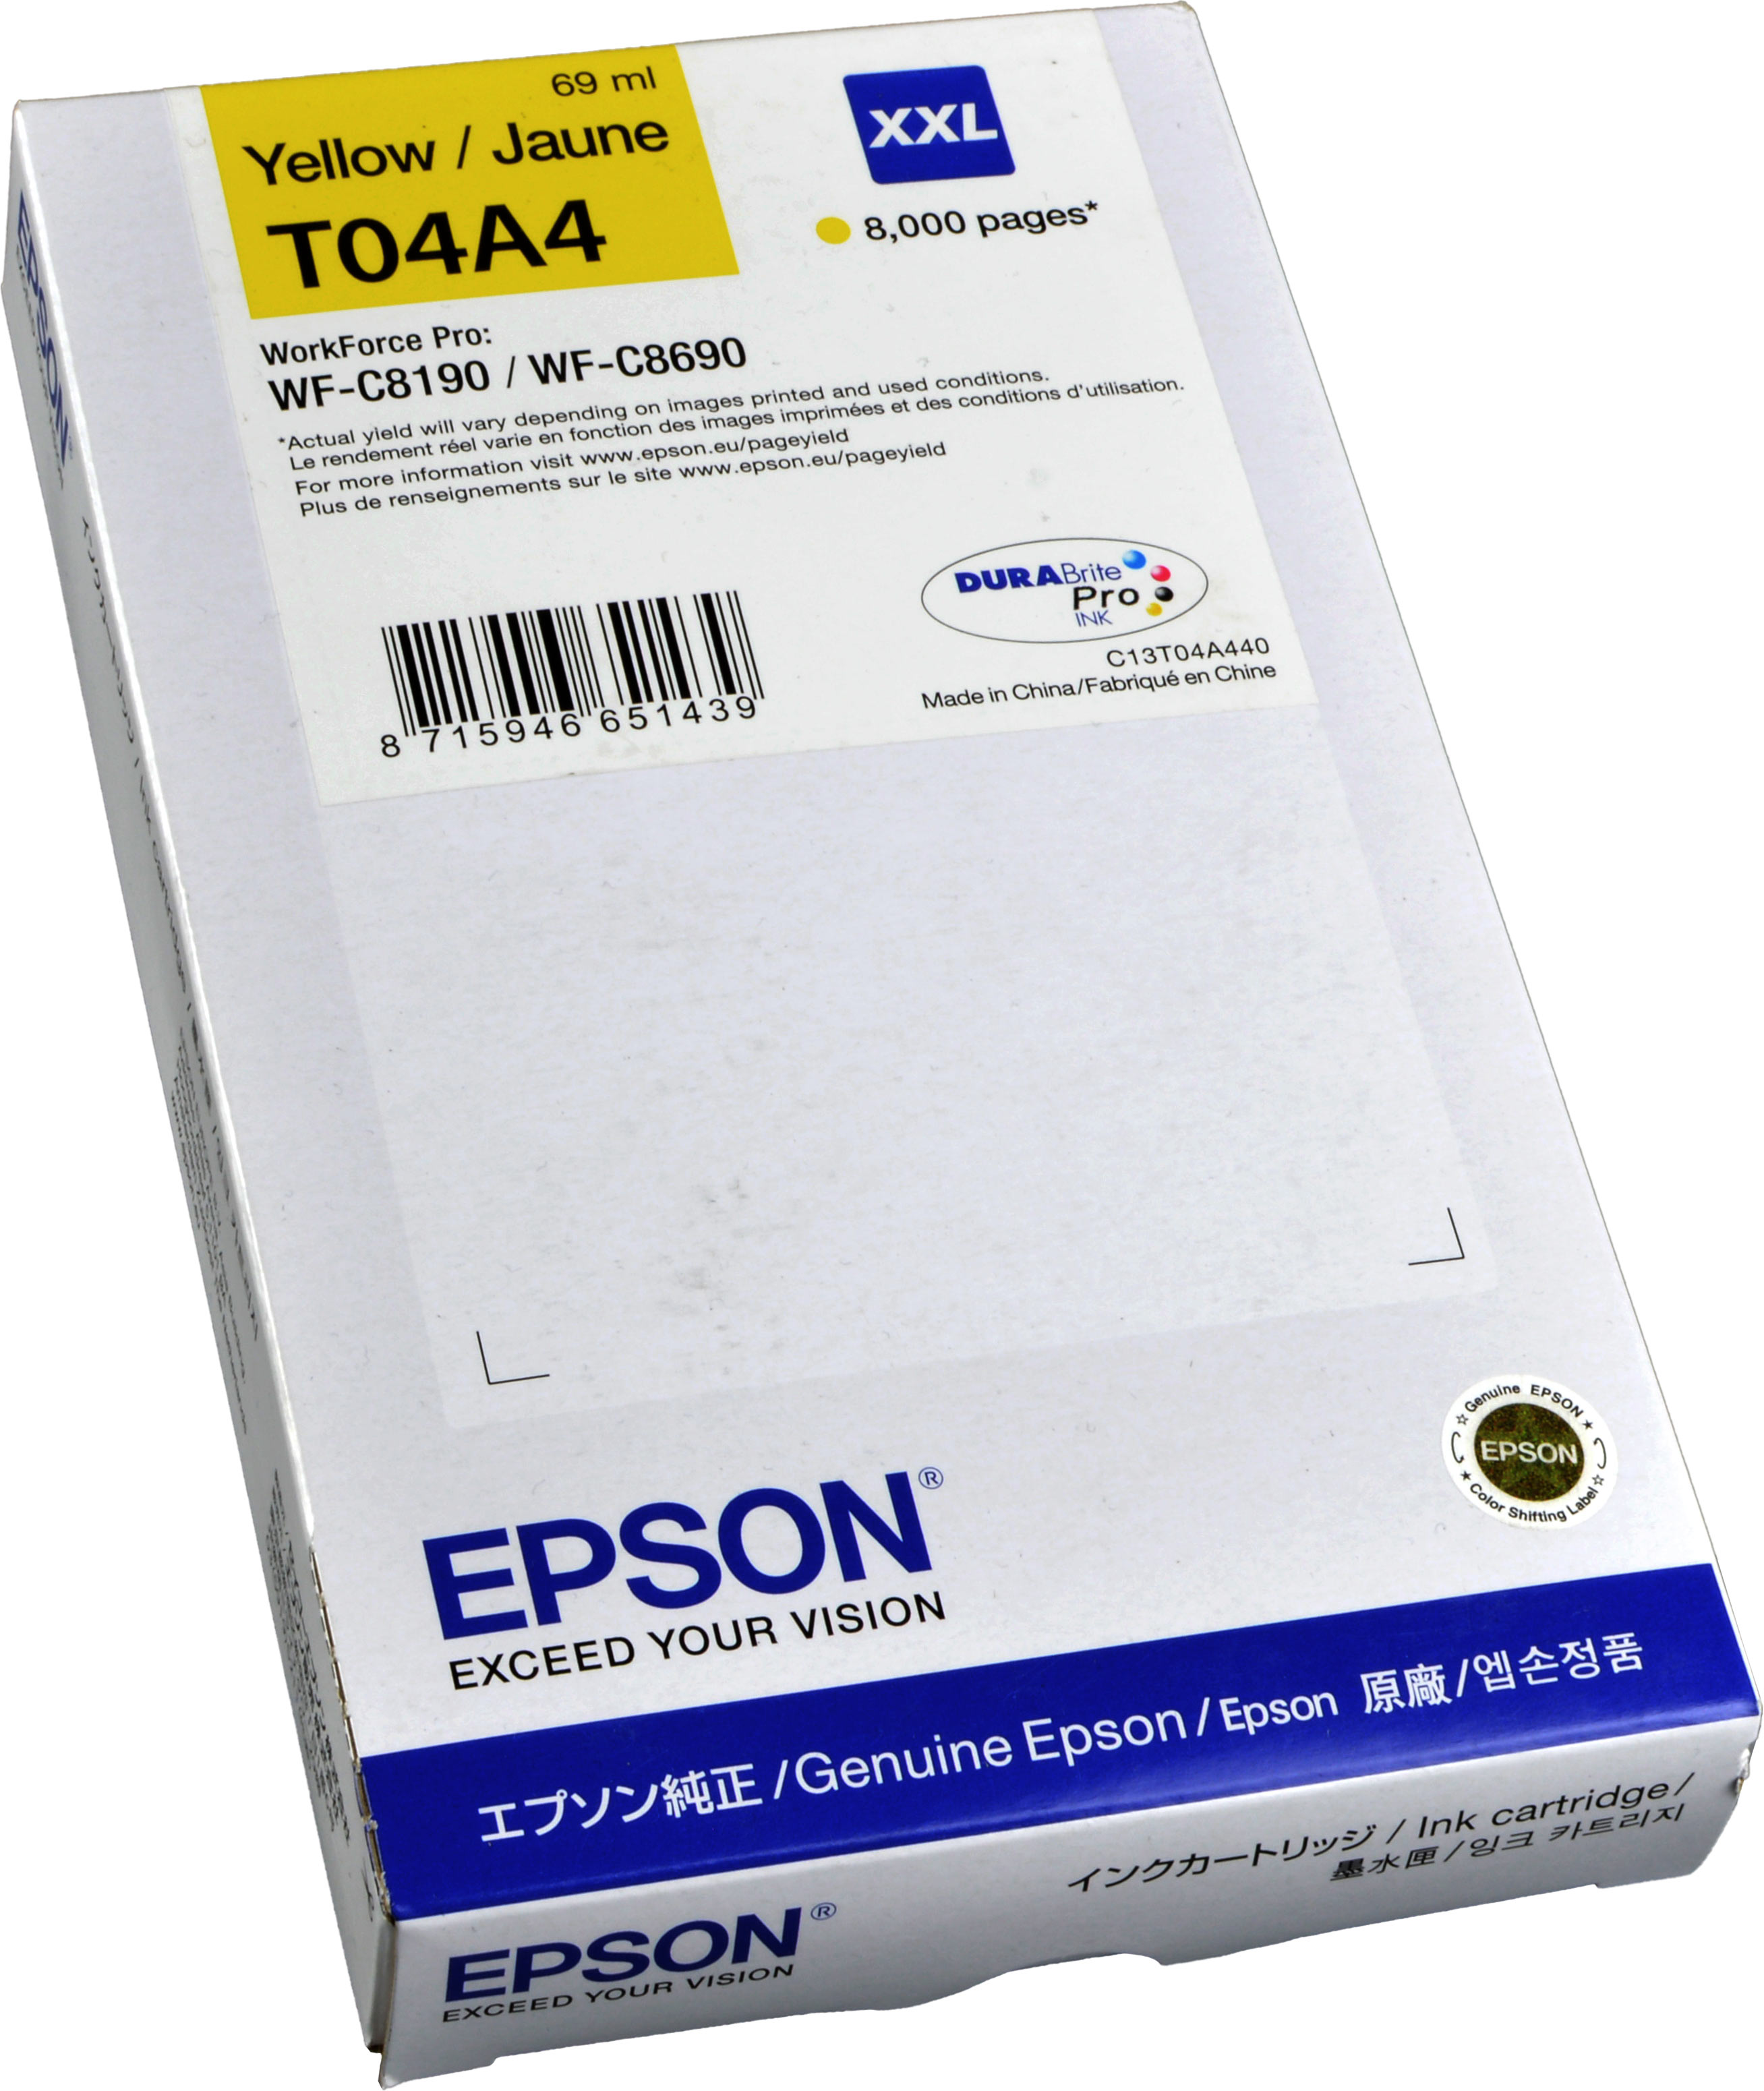 Epson Tinte C13T04A440  XXL  Yellow